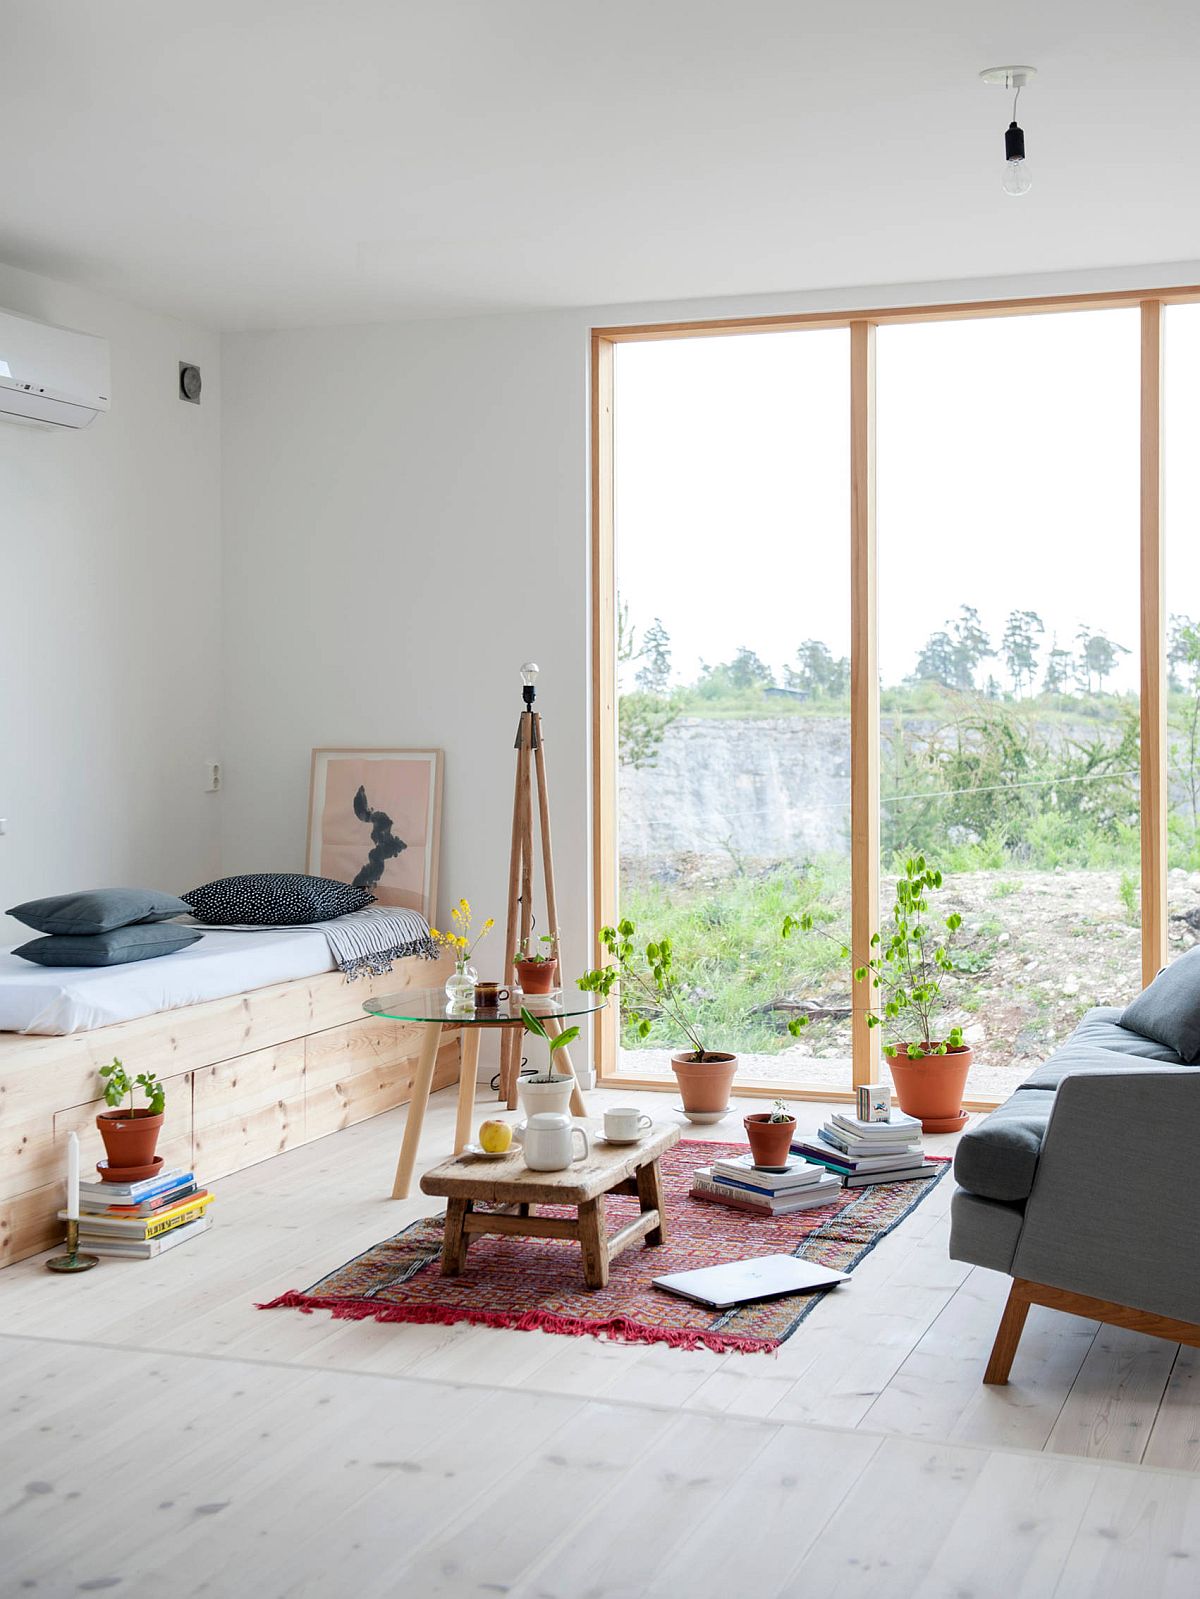 Hình ảnh phòng khách tối giản nổi bật với những chậu cây đất nung nhỏ xinh, sofa xám đối diện giường thư giãn.